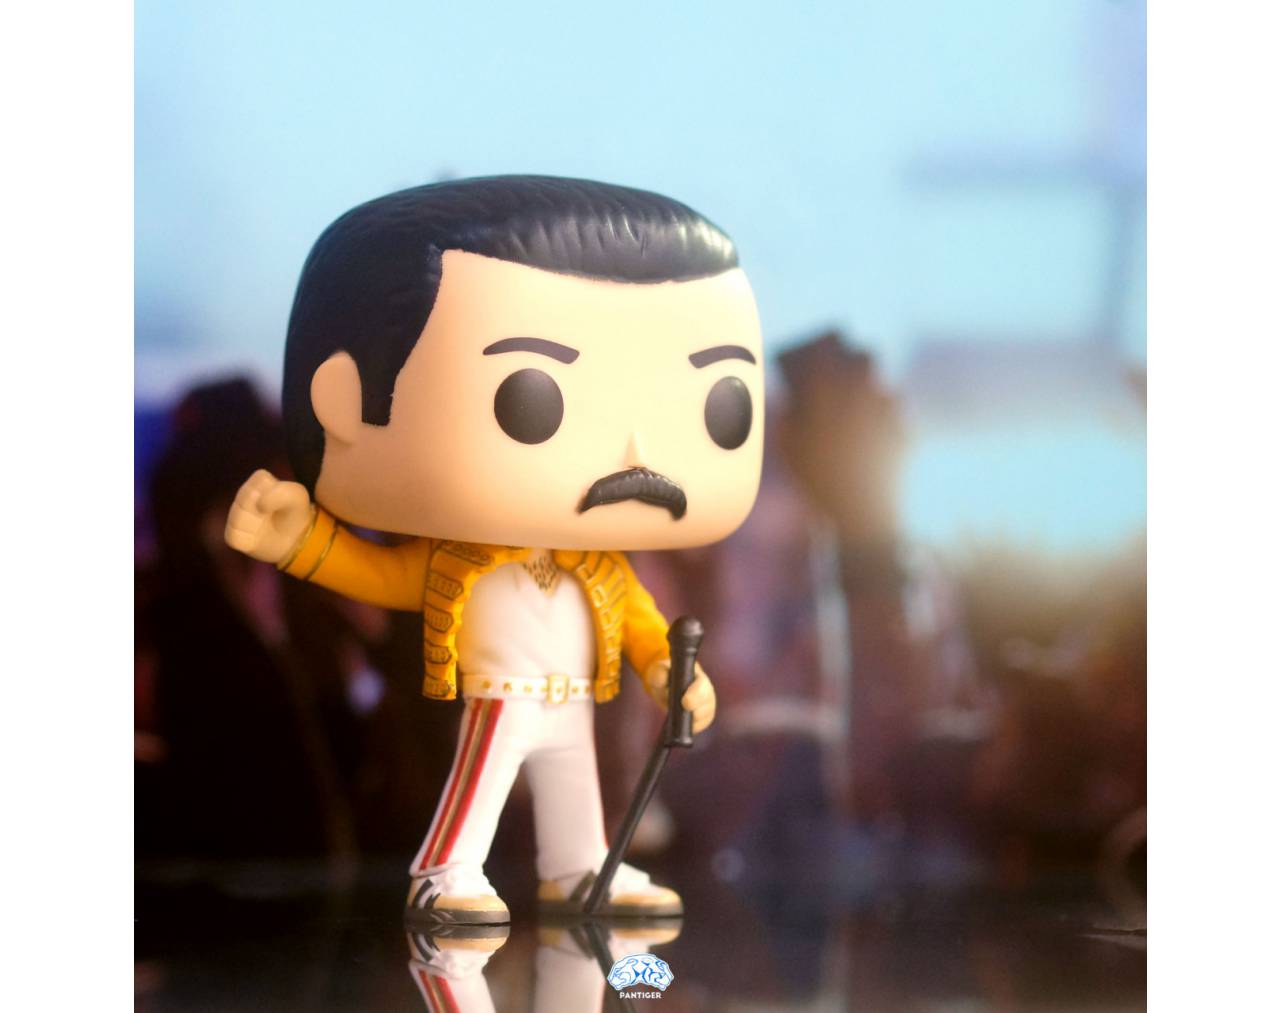 Freddie Mercury (Wembley 1986) Pop! Vinyl